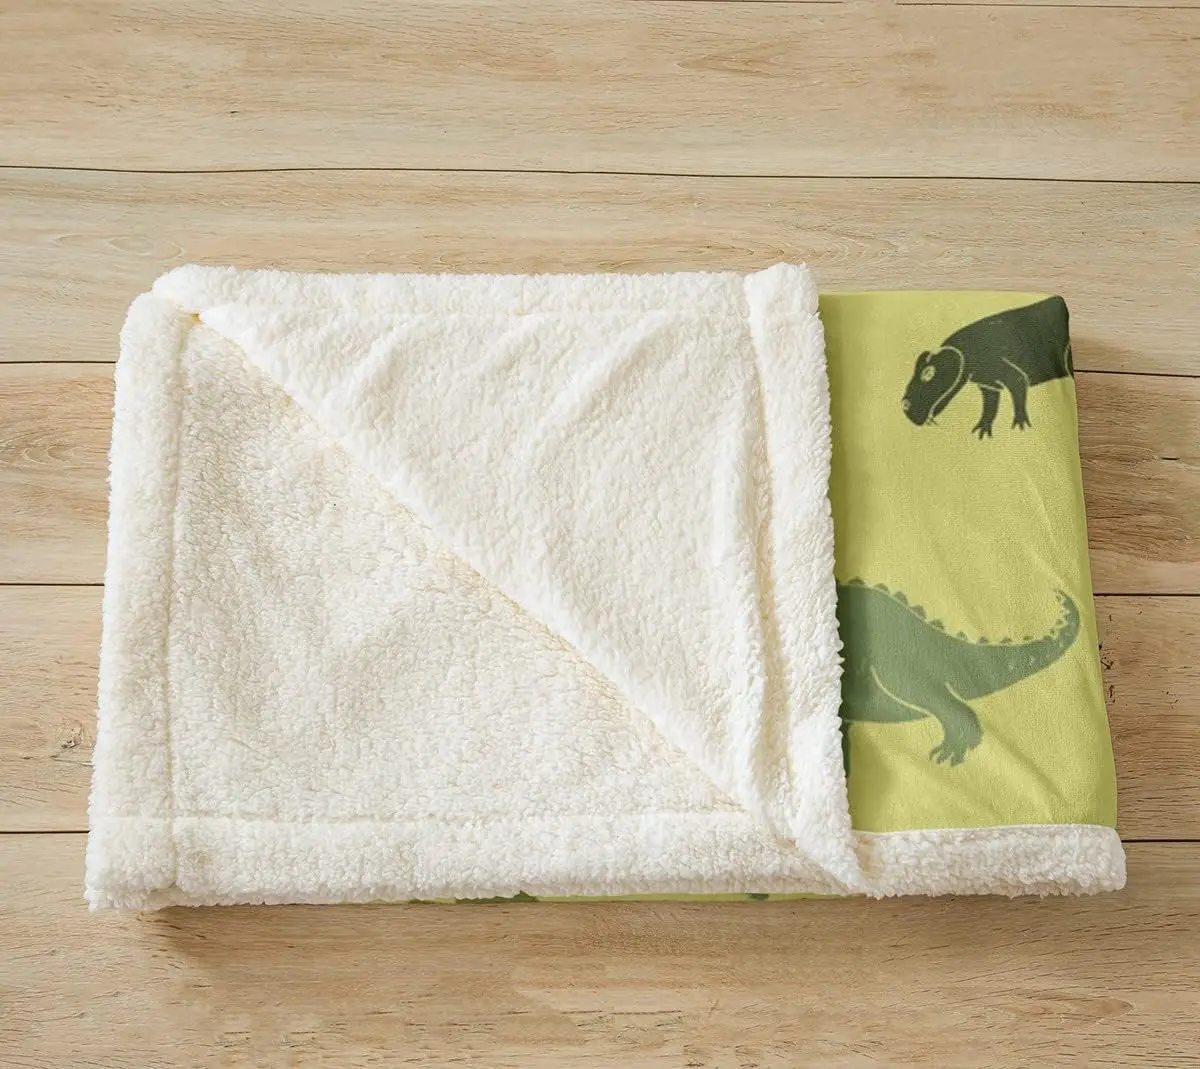 Camo Dinosaur Throw Blanket Армейское зеленое камуфляжное одеяло для кровати для детей, мальчиков, подростков, декор комнаты, дикие животные, флисовое одеяло - 2